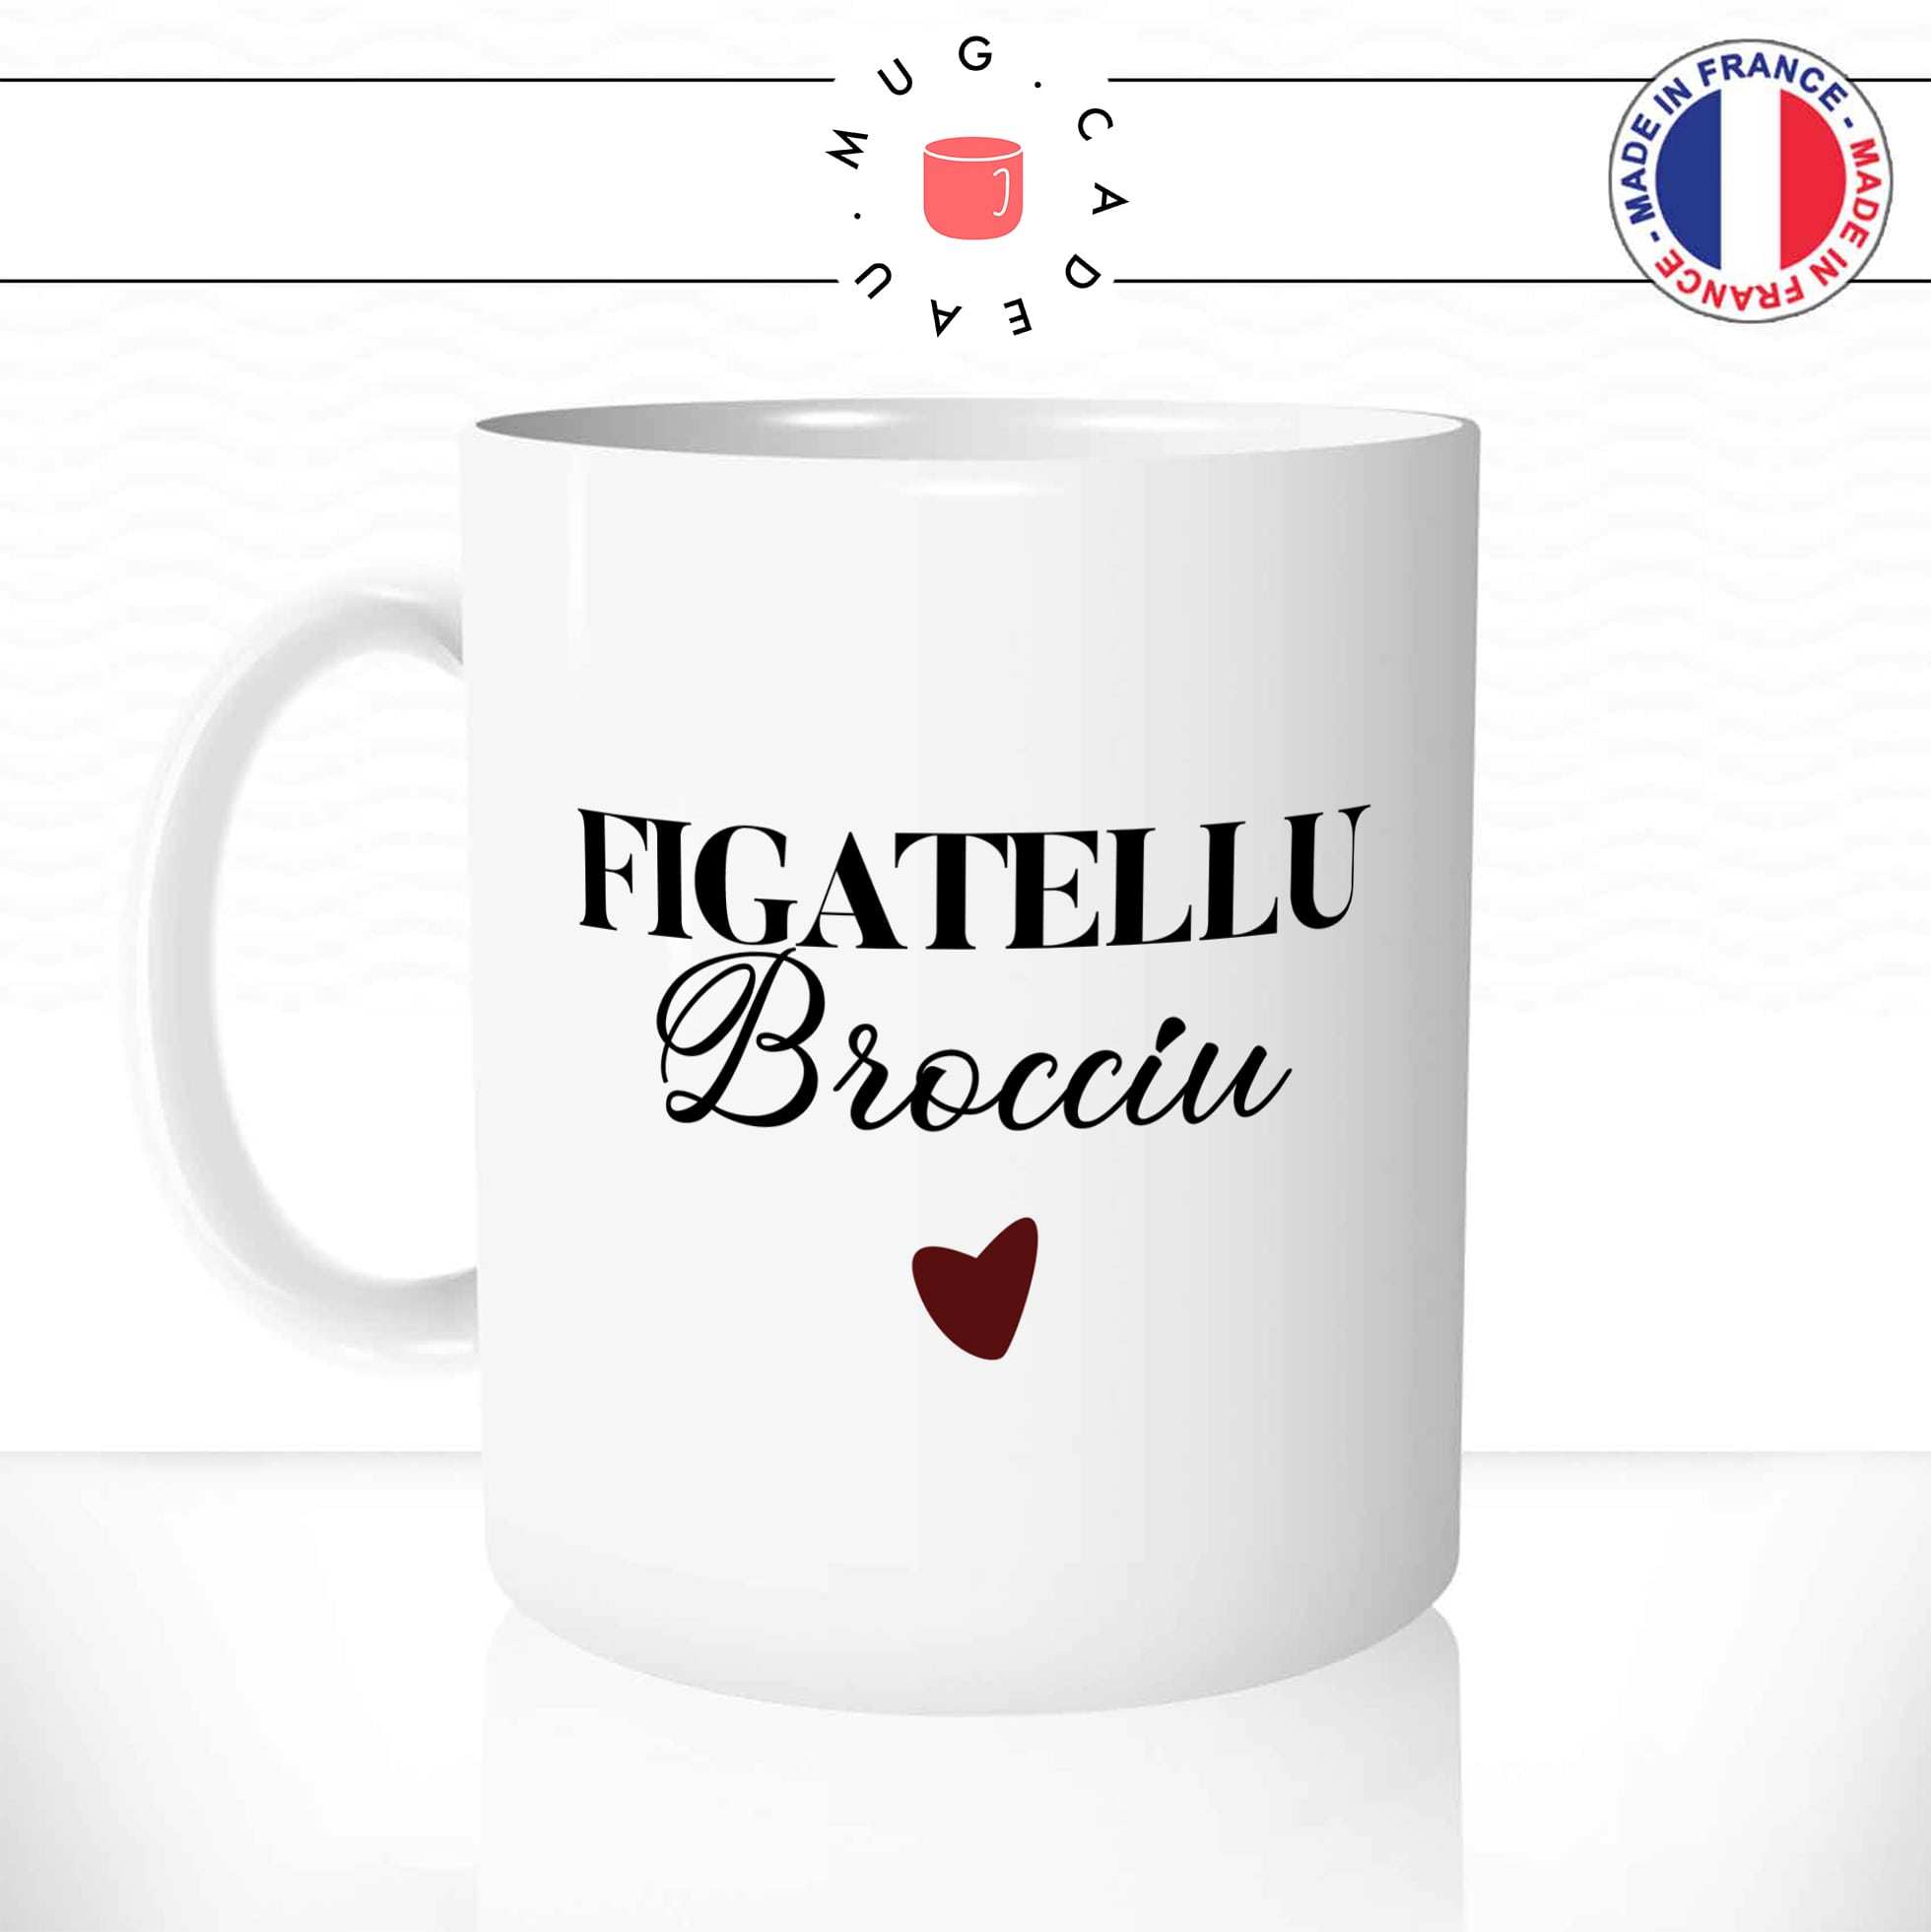 Mug Figatellu Brocciu